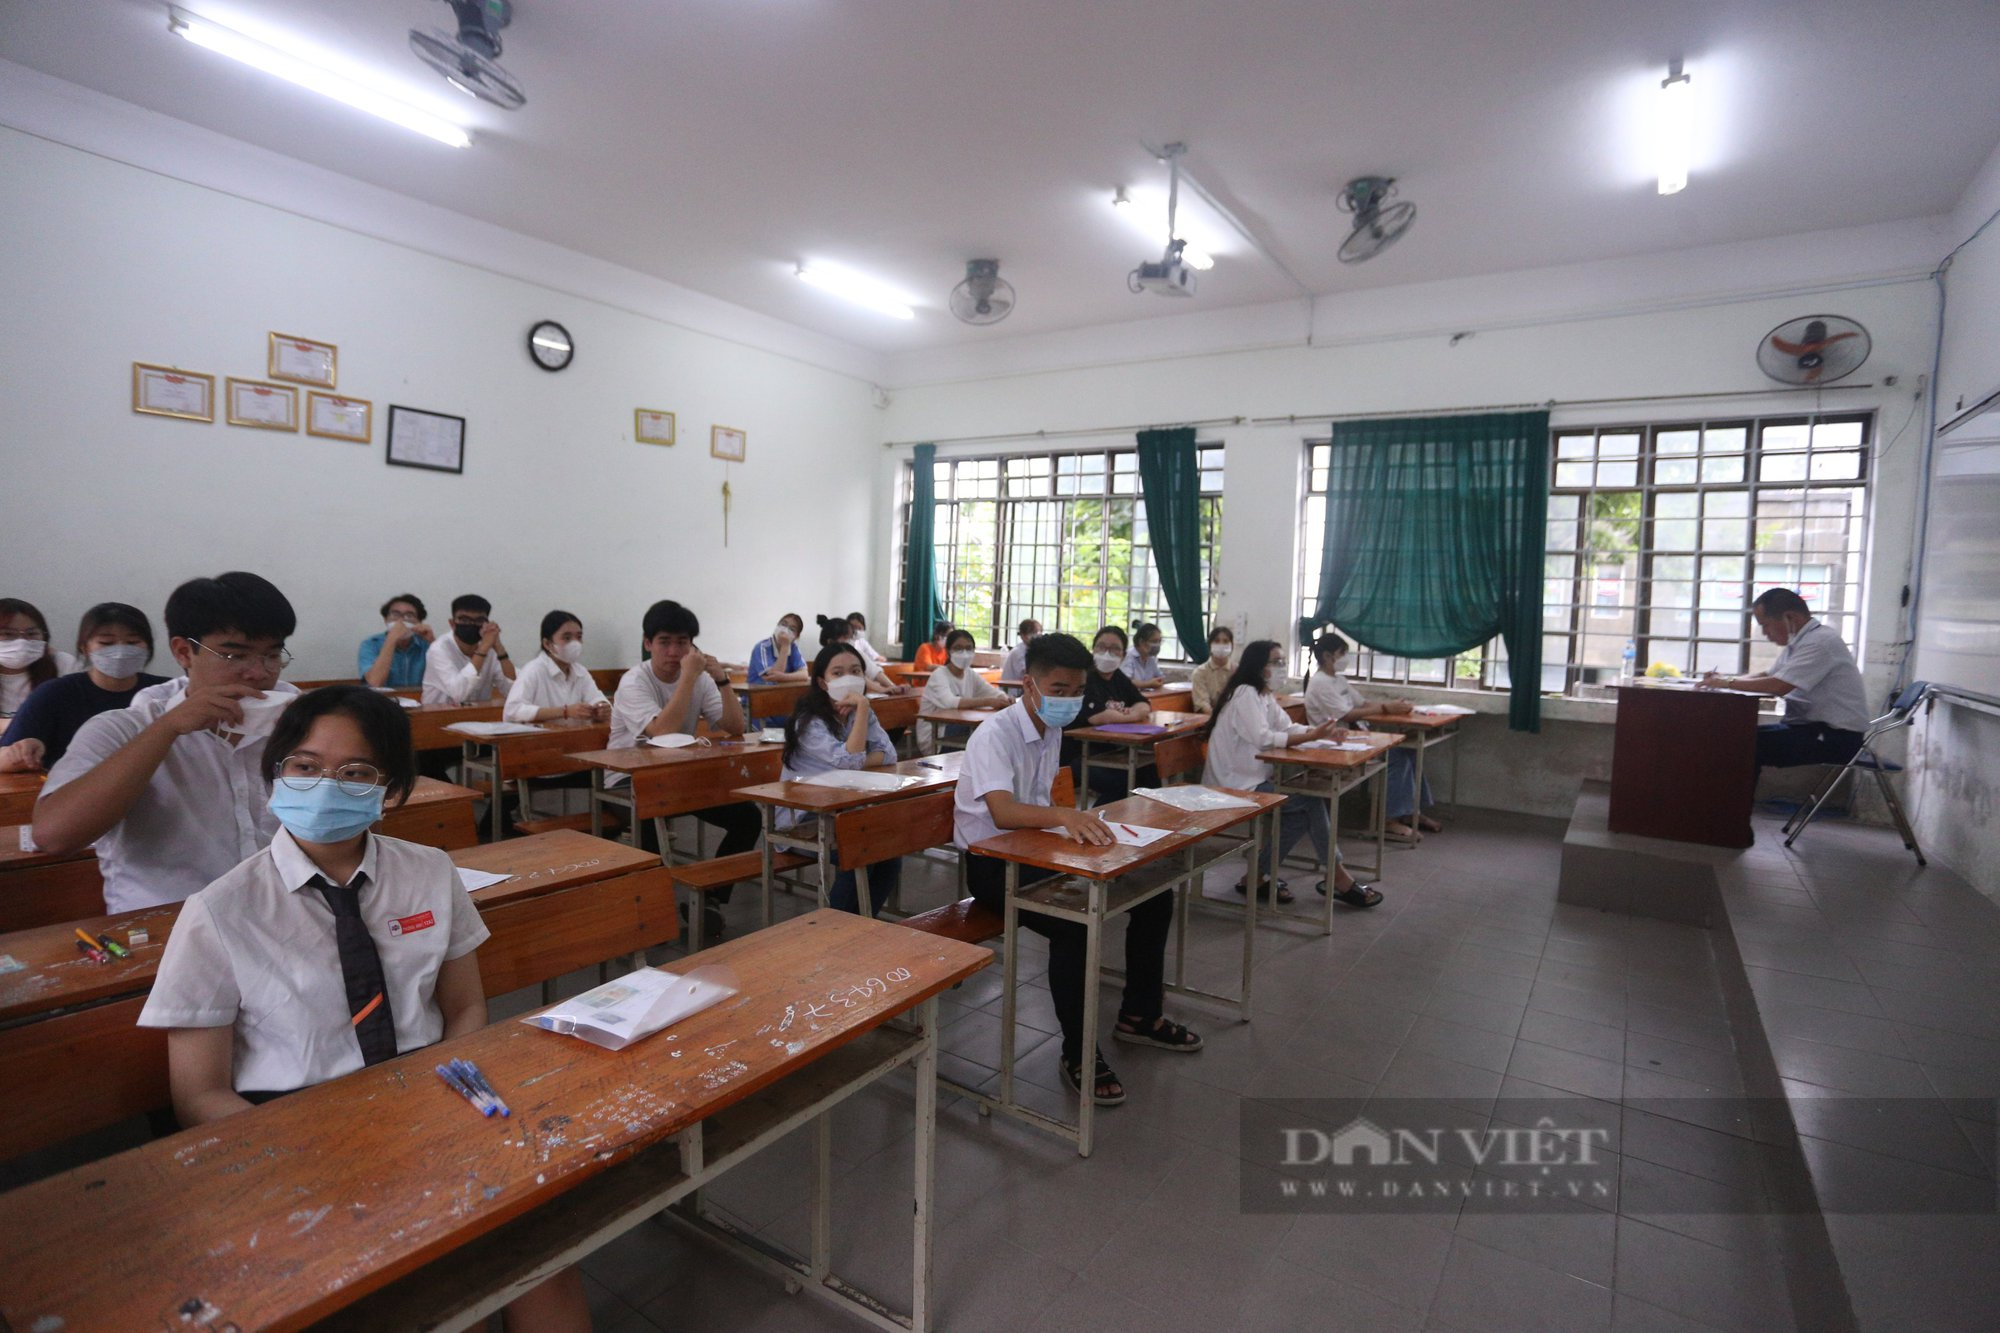 Siêu bão sắp đổ bộ, Đà Nẵng cho học sinh nghỉ học từ chiều nay (26/9) - Ảnh 1.